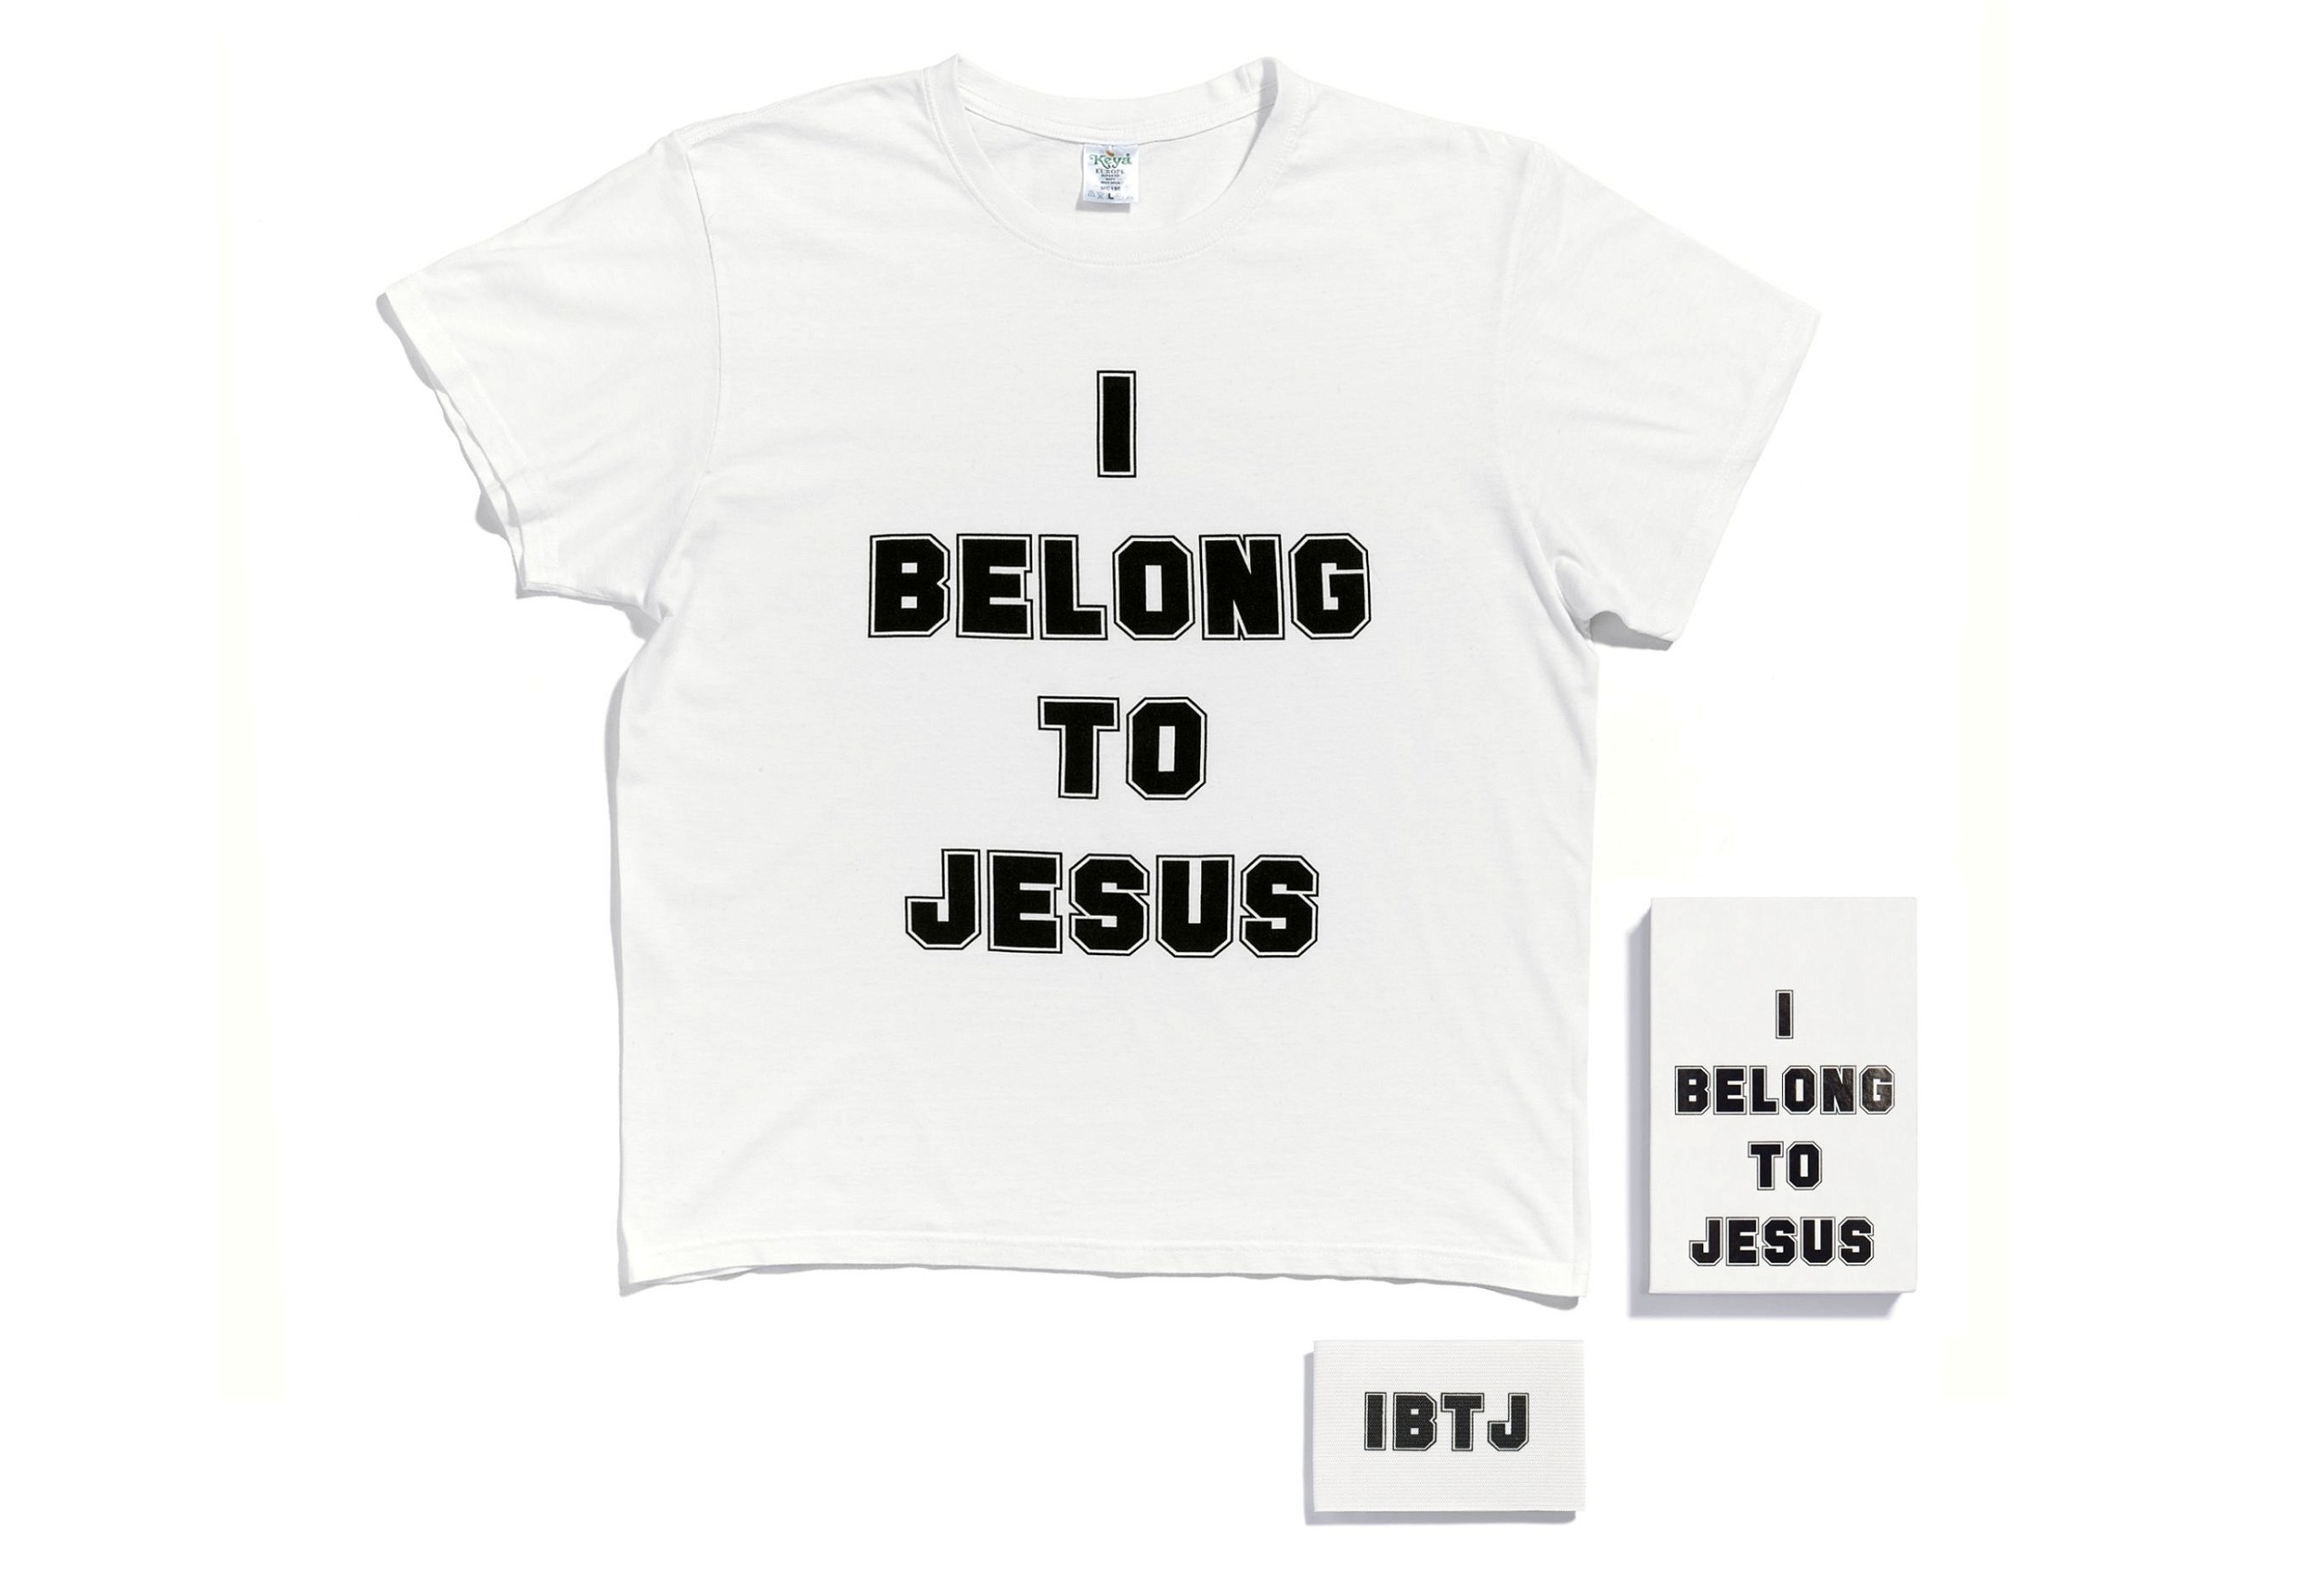 I belong to Jesus, 2016